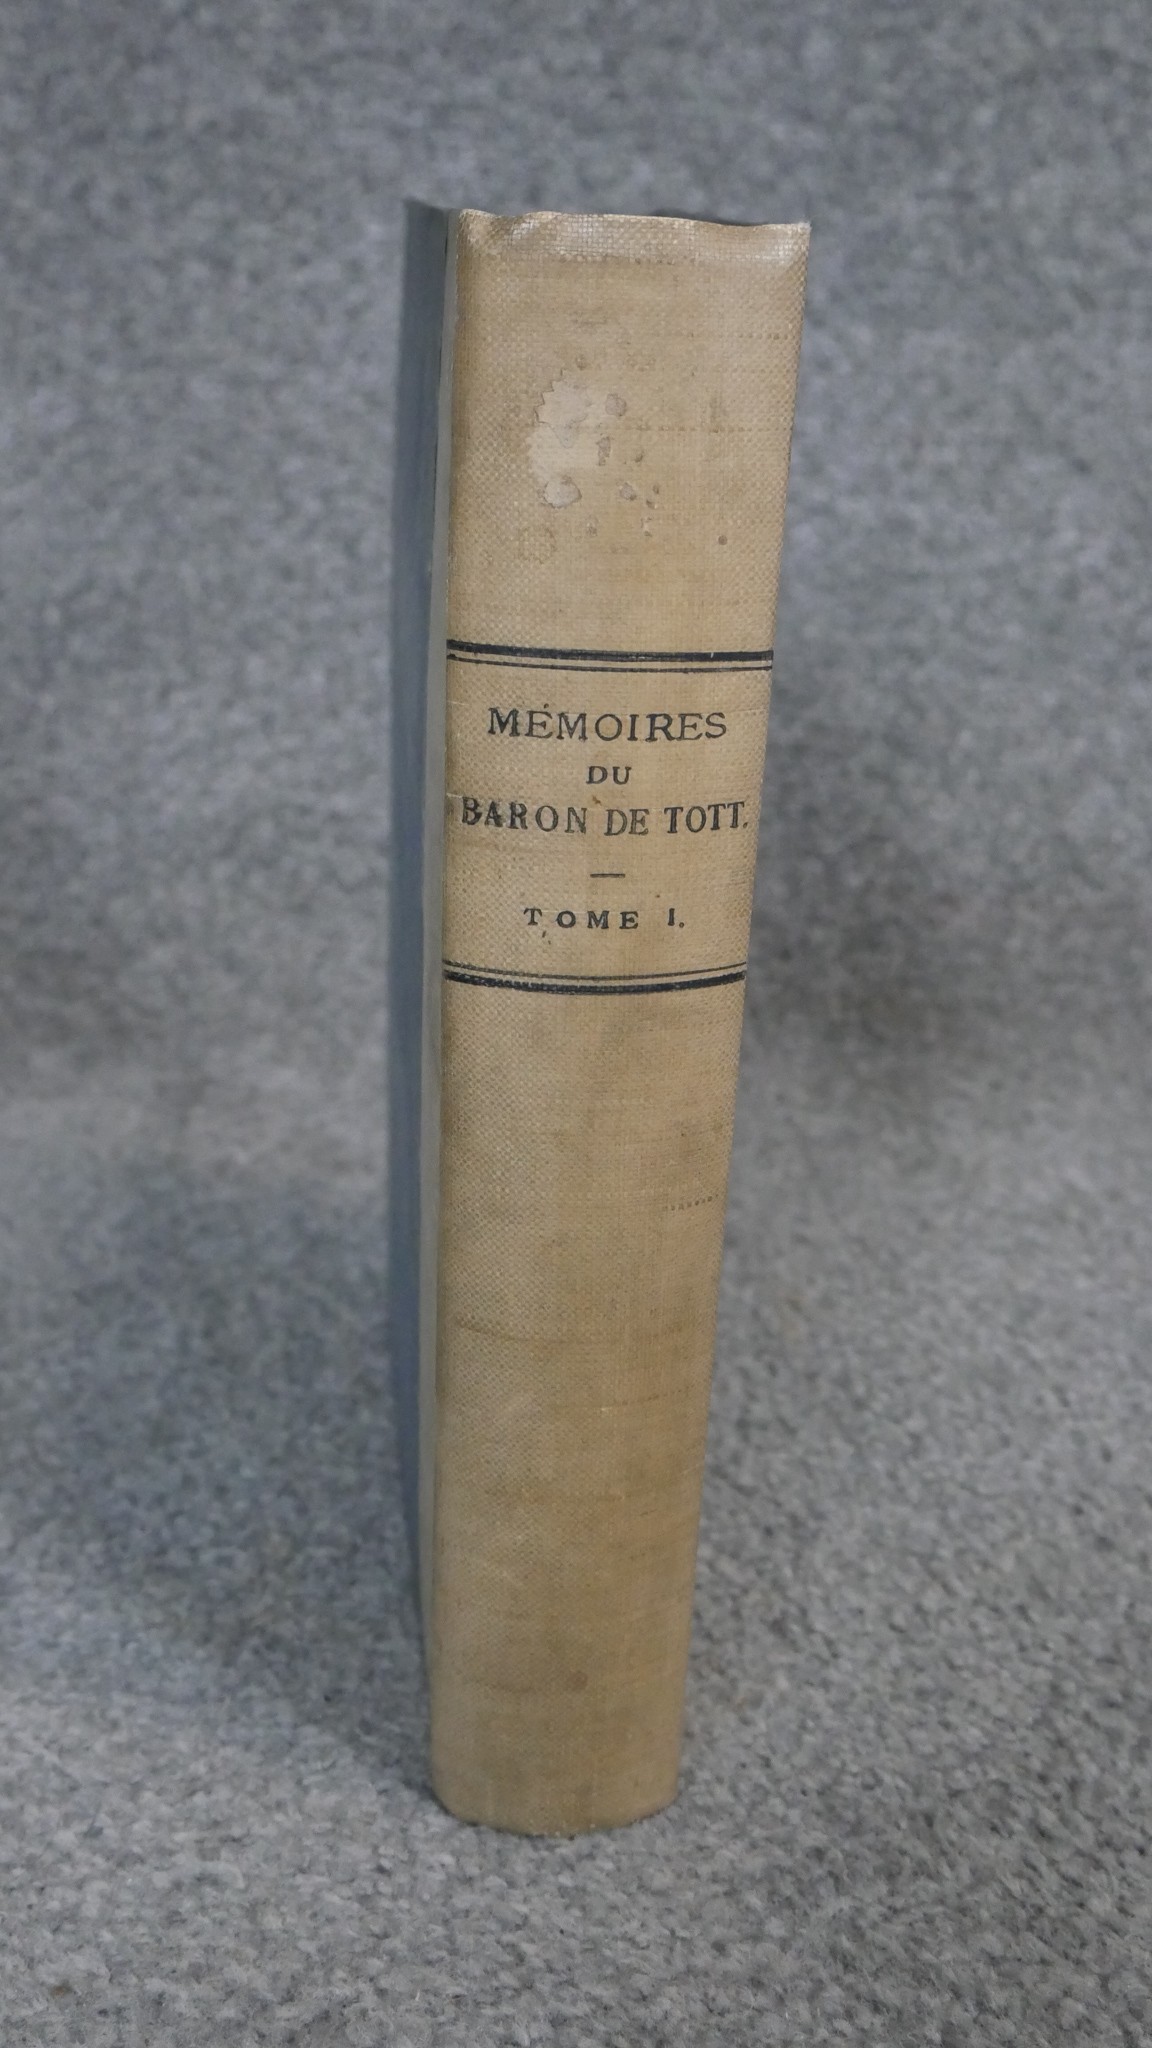 Tott (Francois, Baron de) Memoires sur les Turcs et les Tatares, tome premier, with fold out black